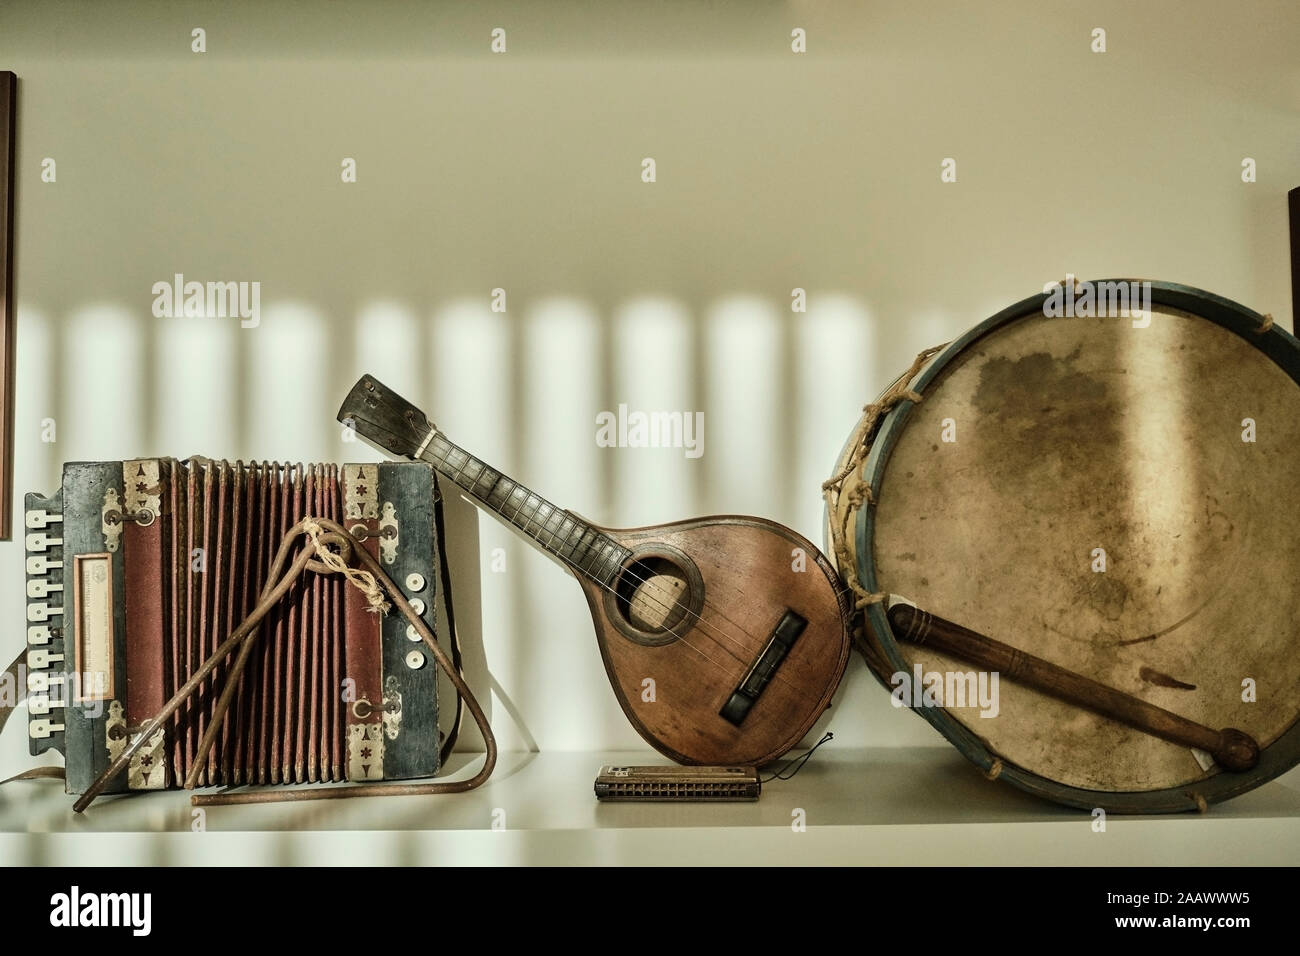 Portugal, el valle del Douro, instrumentos musicales tradicionales de los trabajadores del viñedo Foto de stock